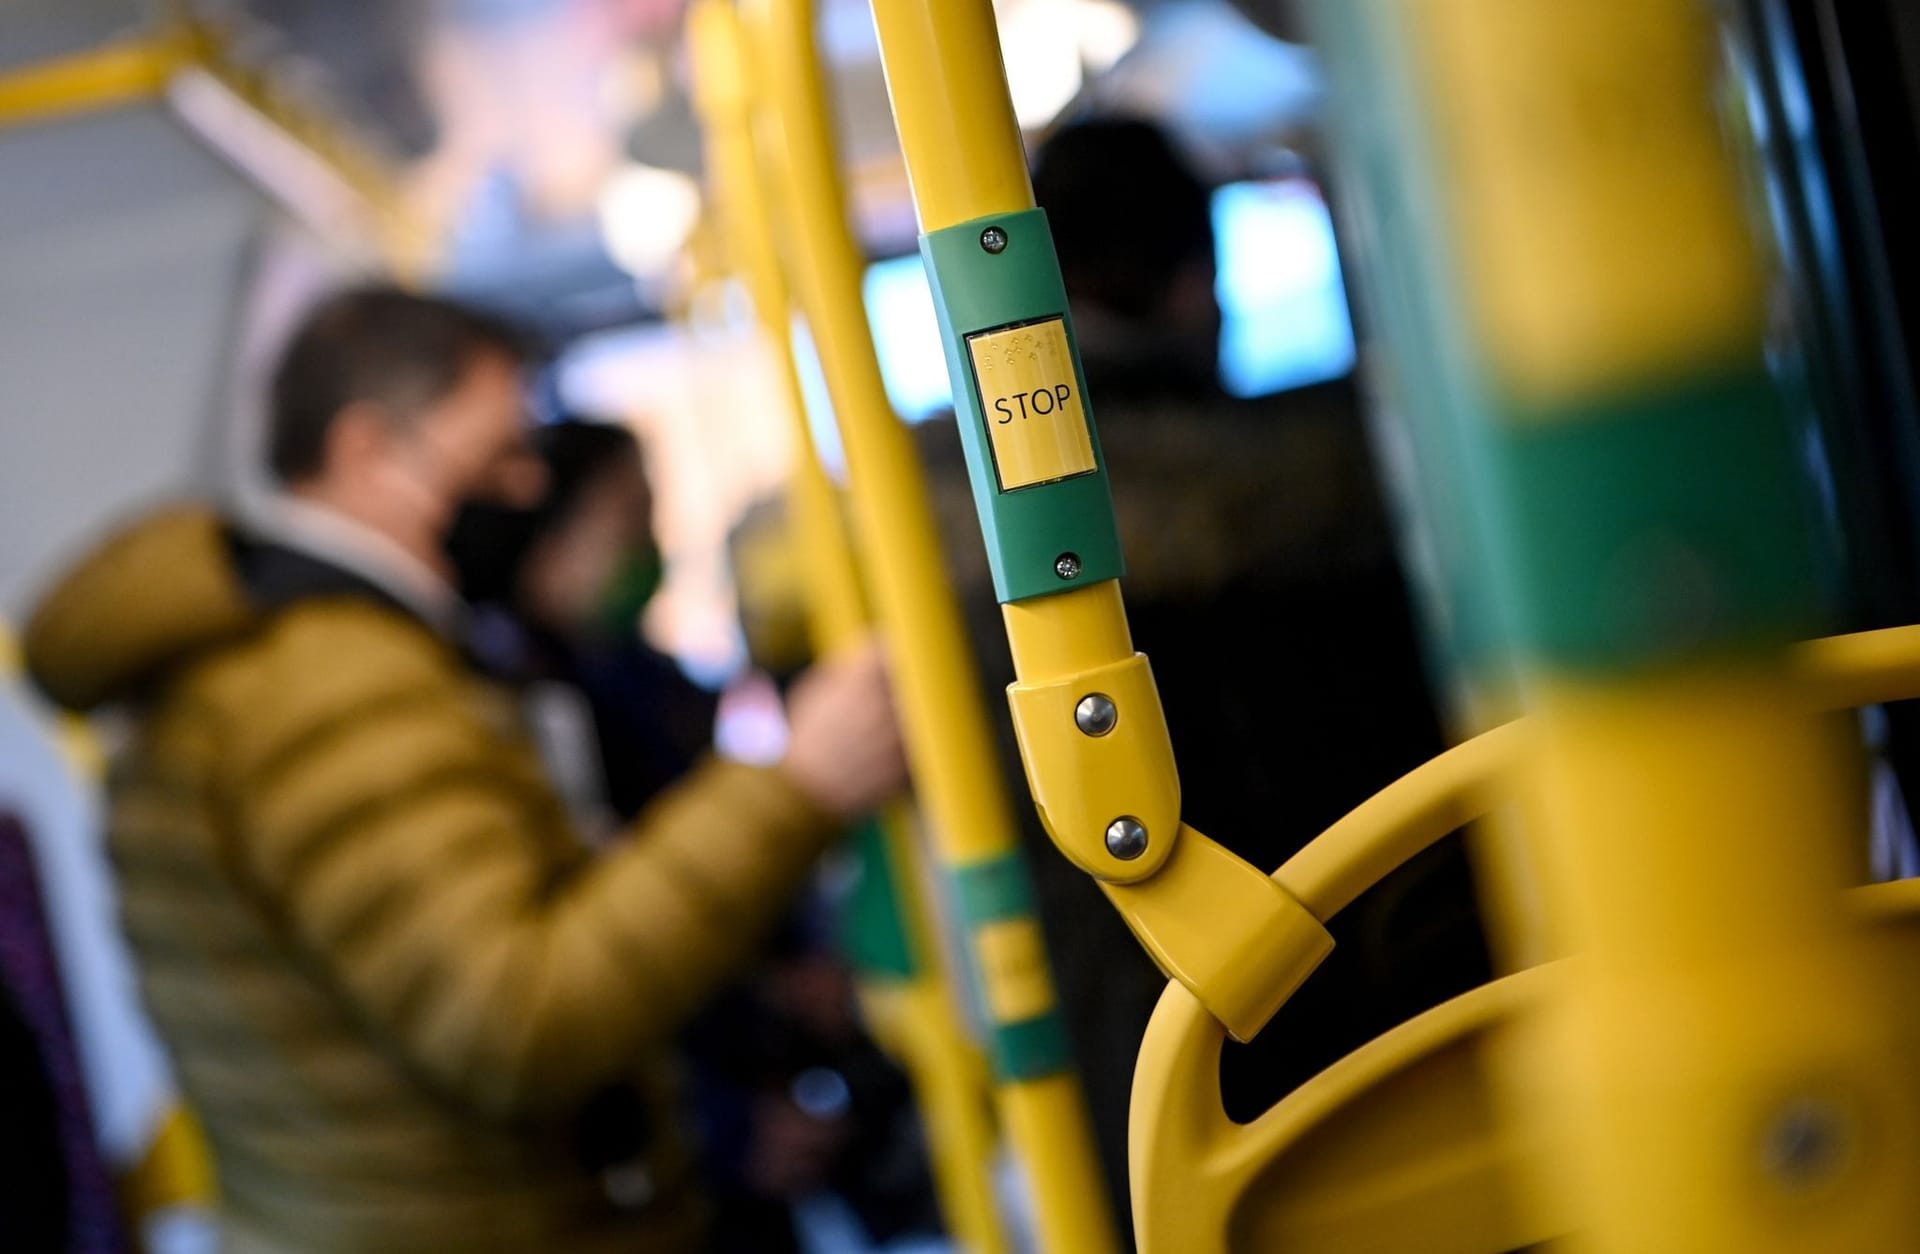 Fahrgäste in einem Bus der Berliner Verkehrsbetriebe: In Berlin muss im öffentlichen Nahverkehr weiterhin eine Maske getragen werden.